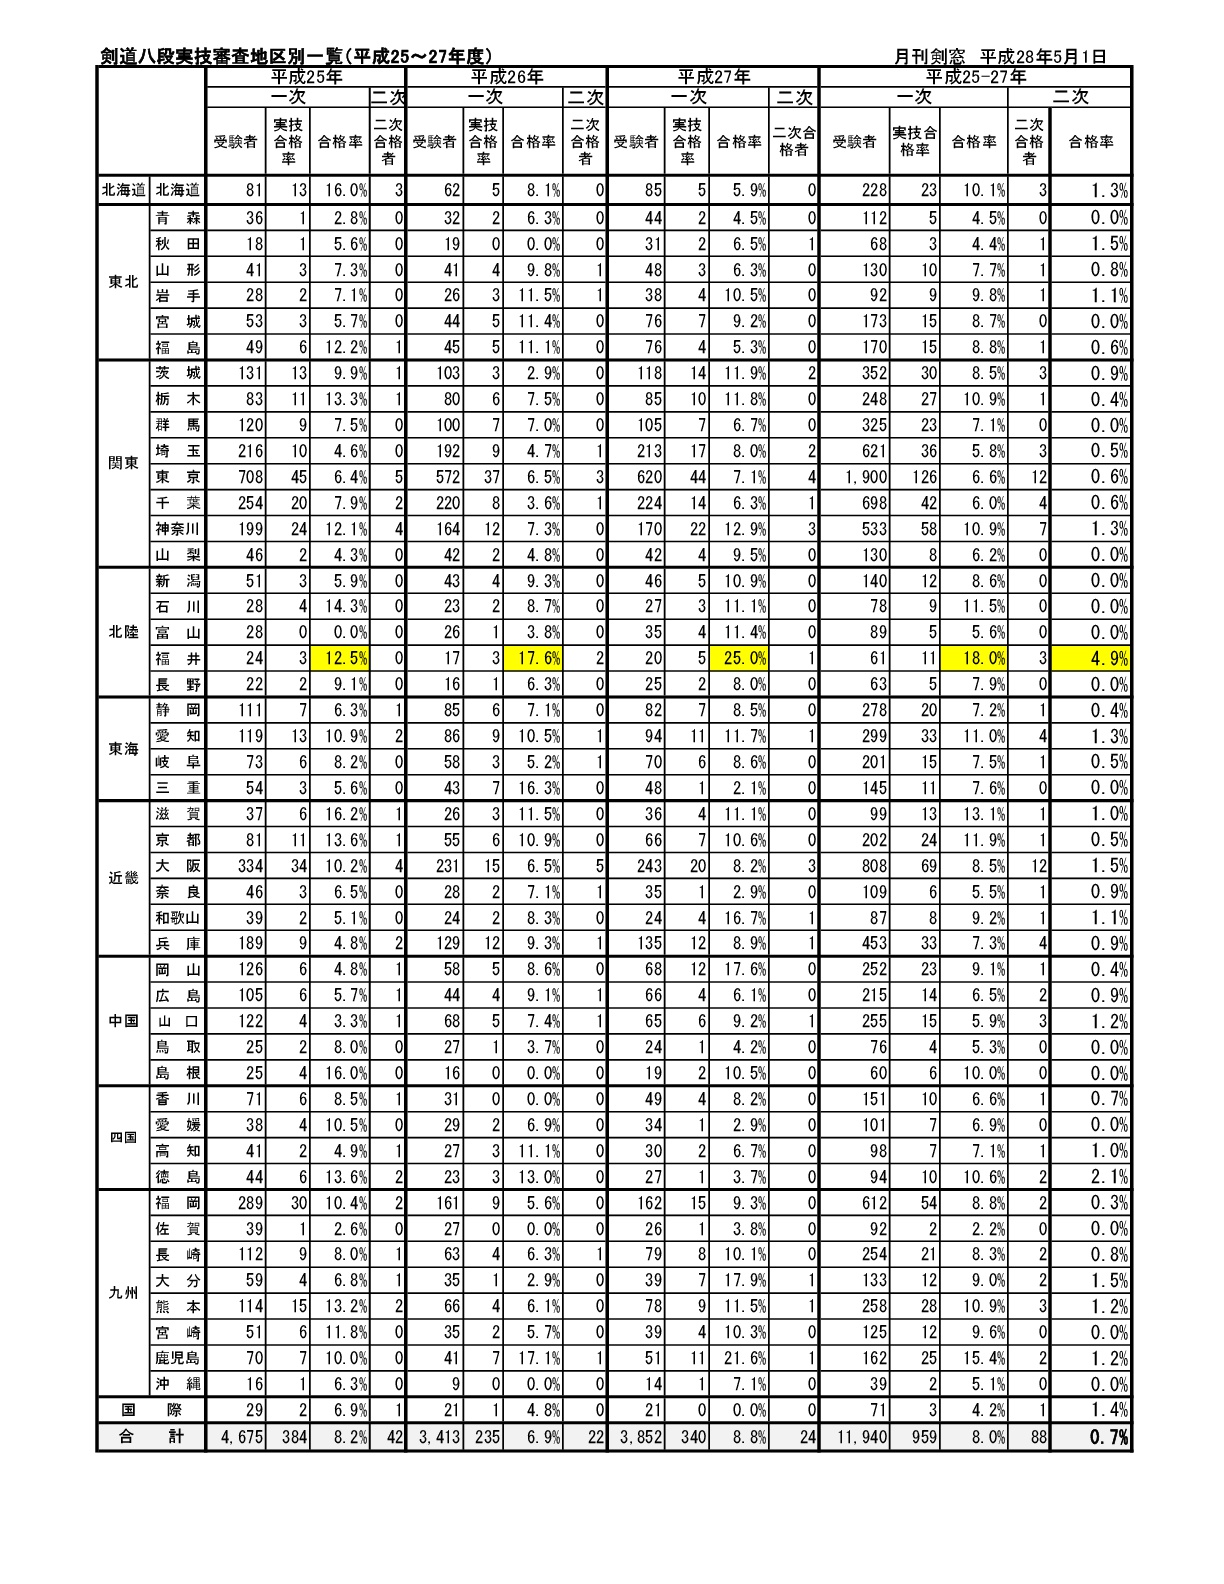 剣道八段合格率地区別一覧（平成25-27）-001.jpg